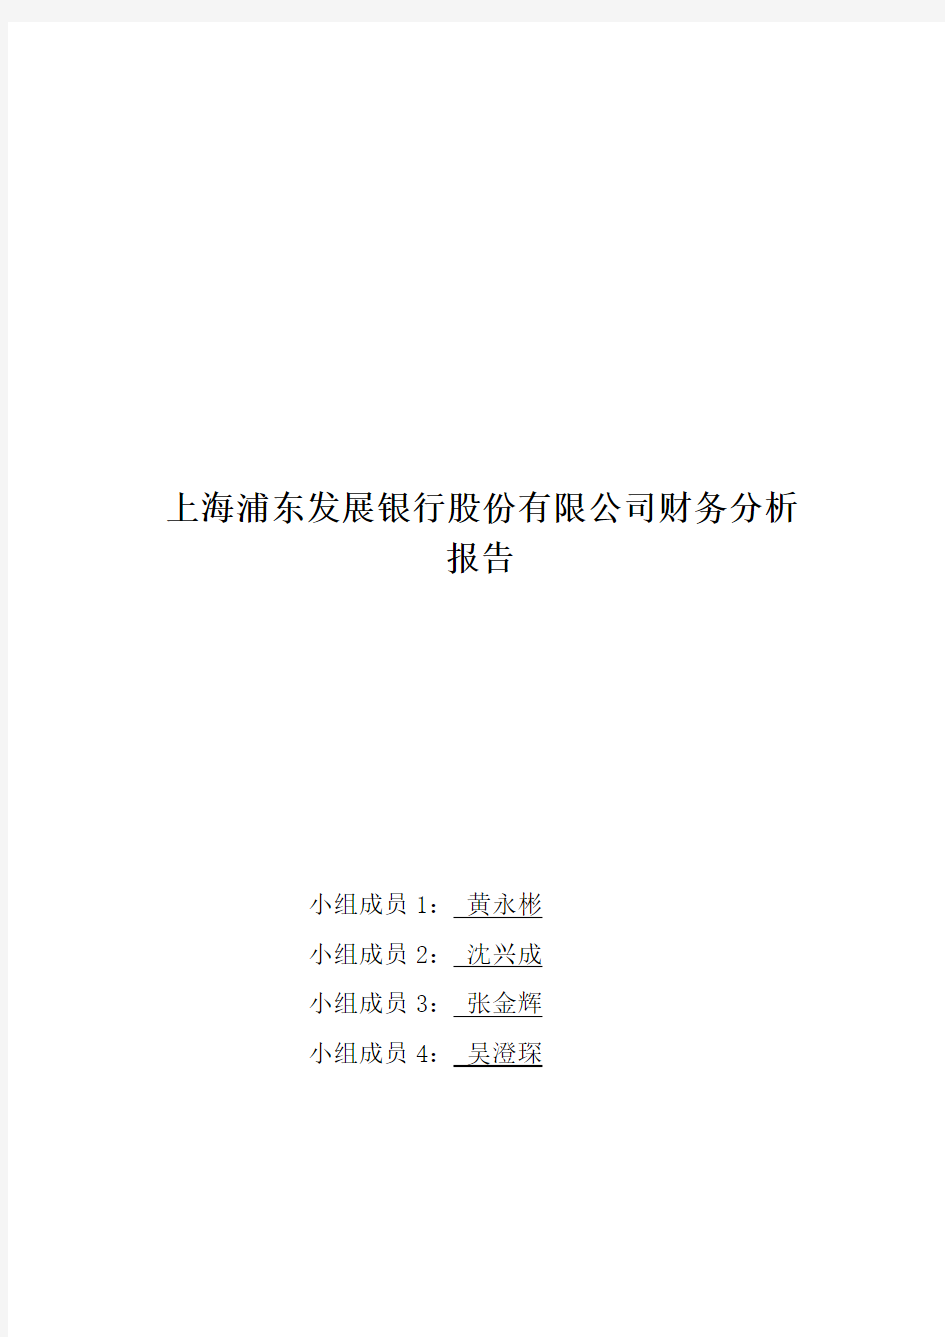 上海浦发银行财务分析报告(doc 27页)